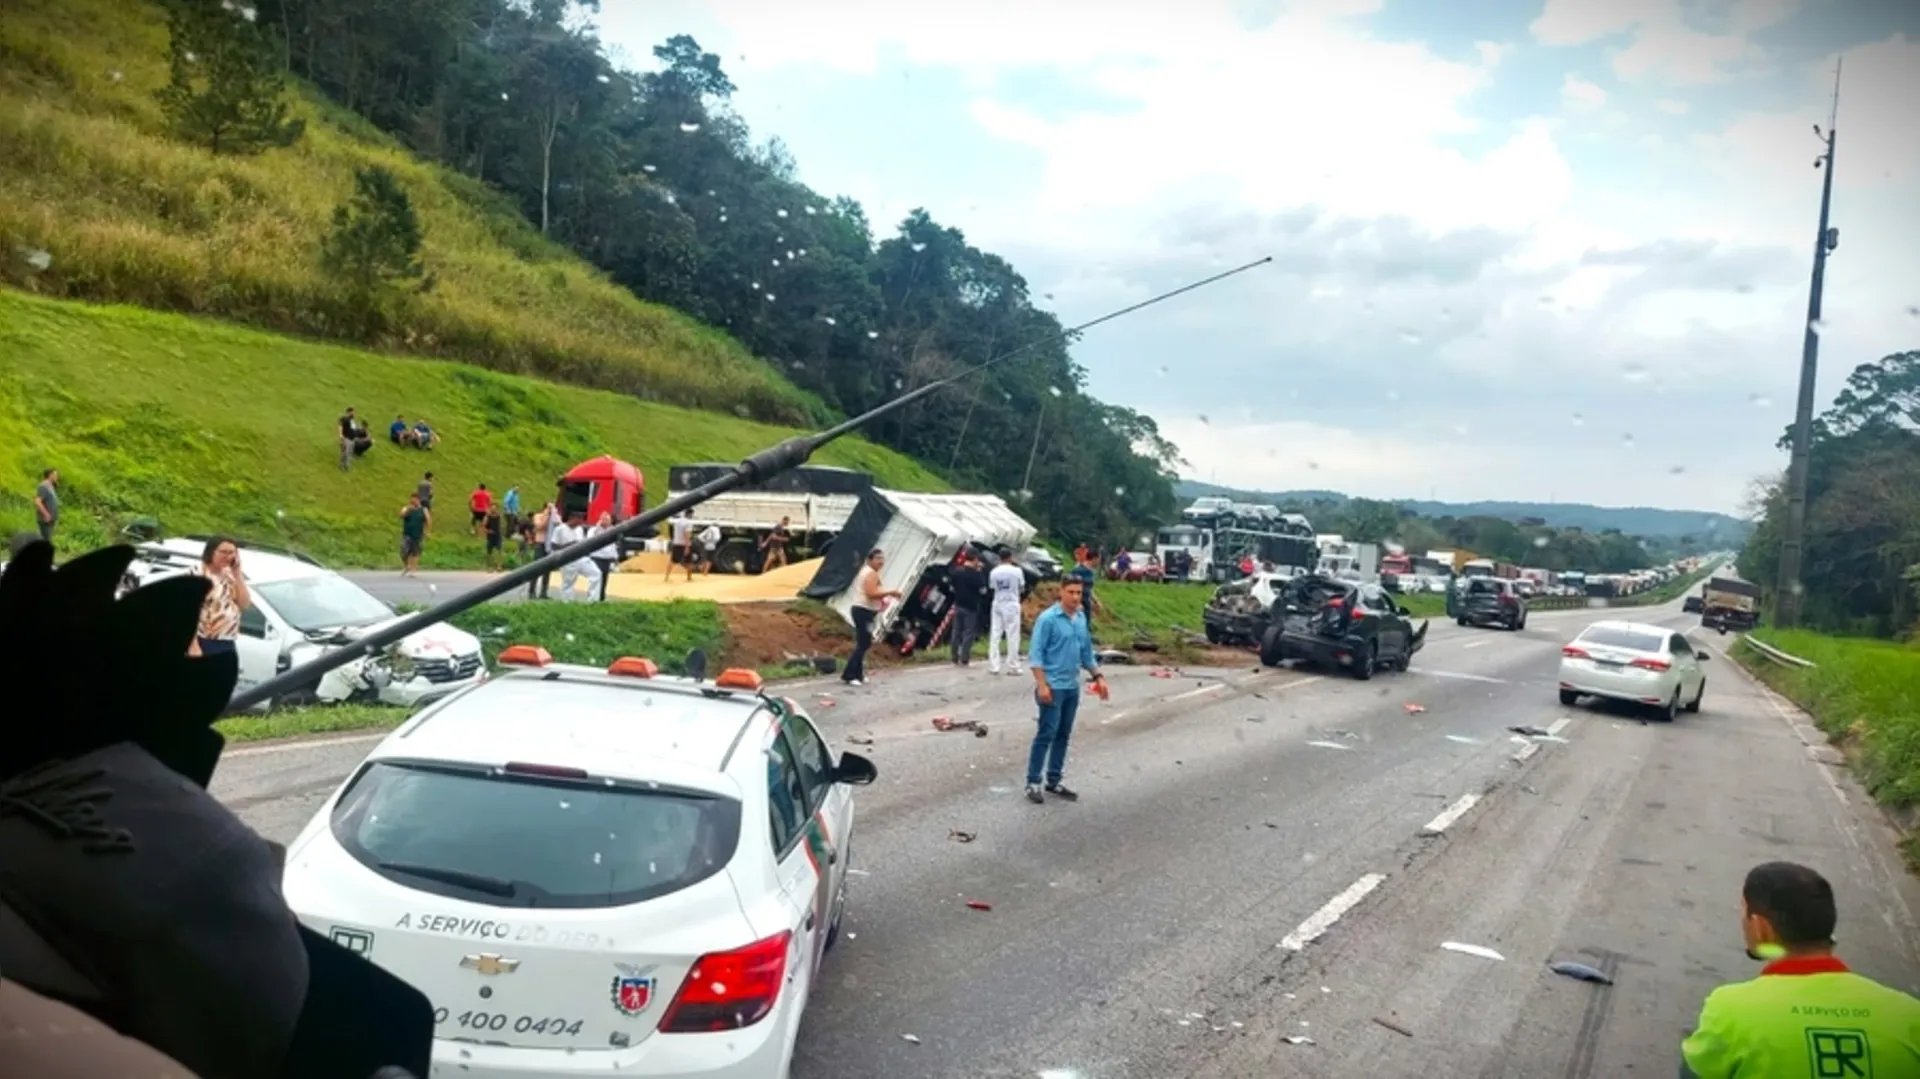 Veículos oficiais bloqueiam BR-277, entre Curitiba e Ponta Grossa - dcmais